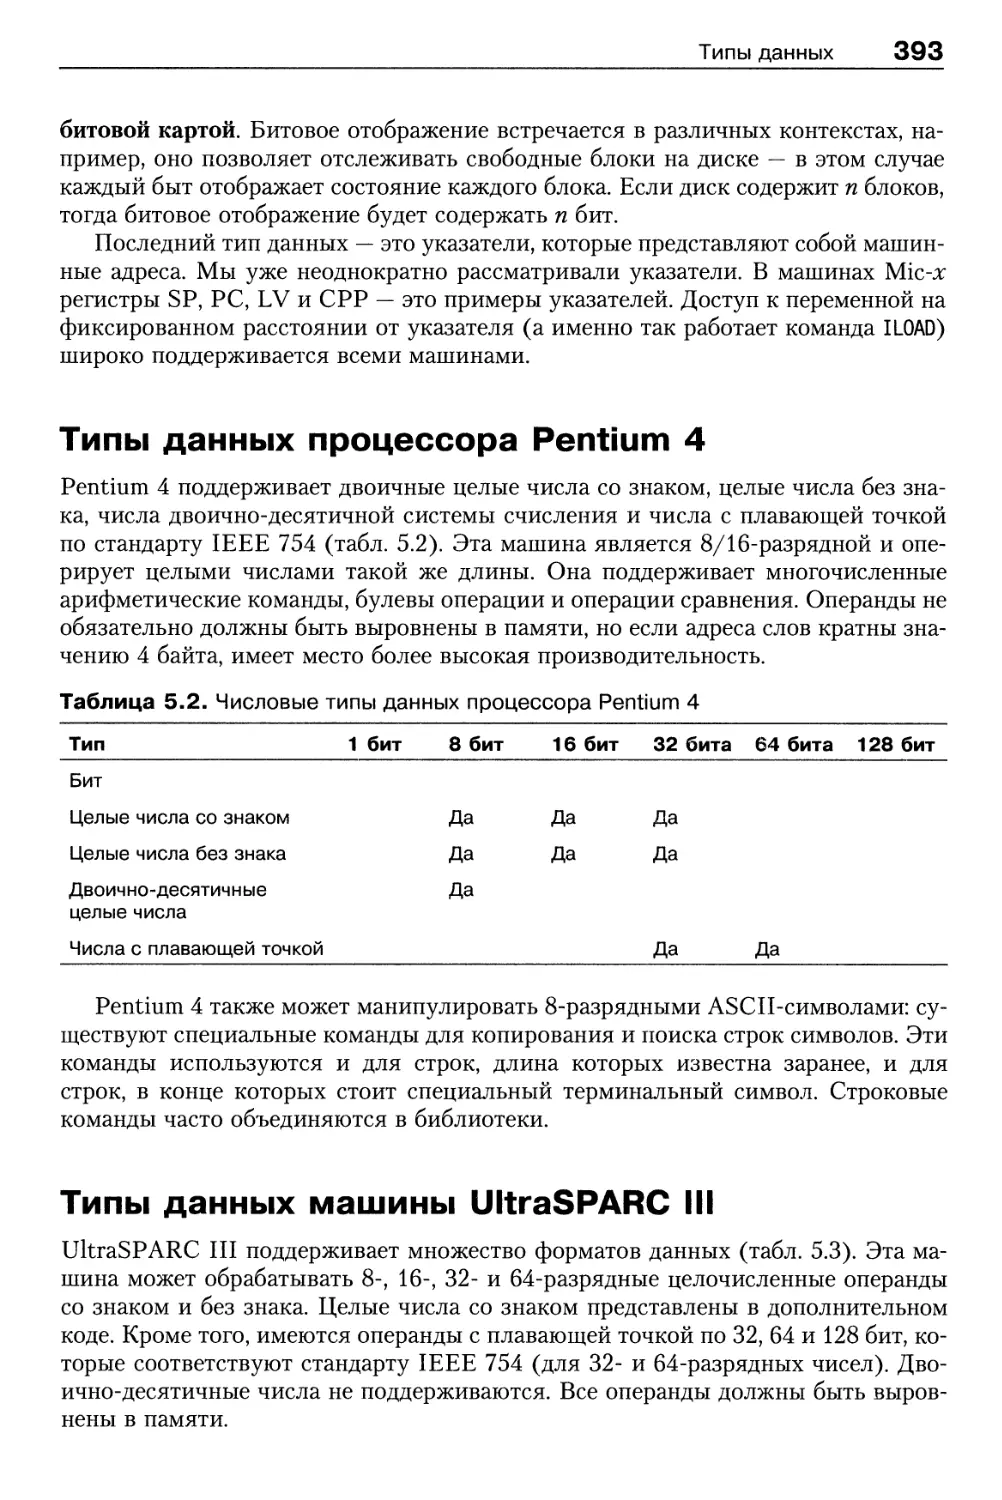 Типы данных процессора Pentium 4
Типы данных машины UltraSPARC III